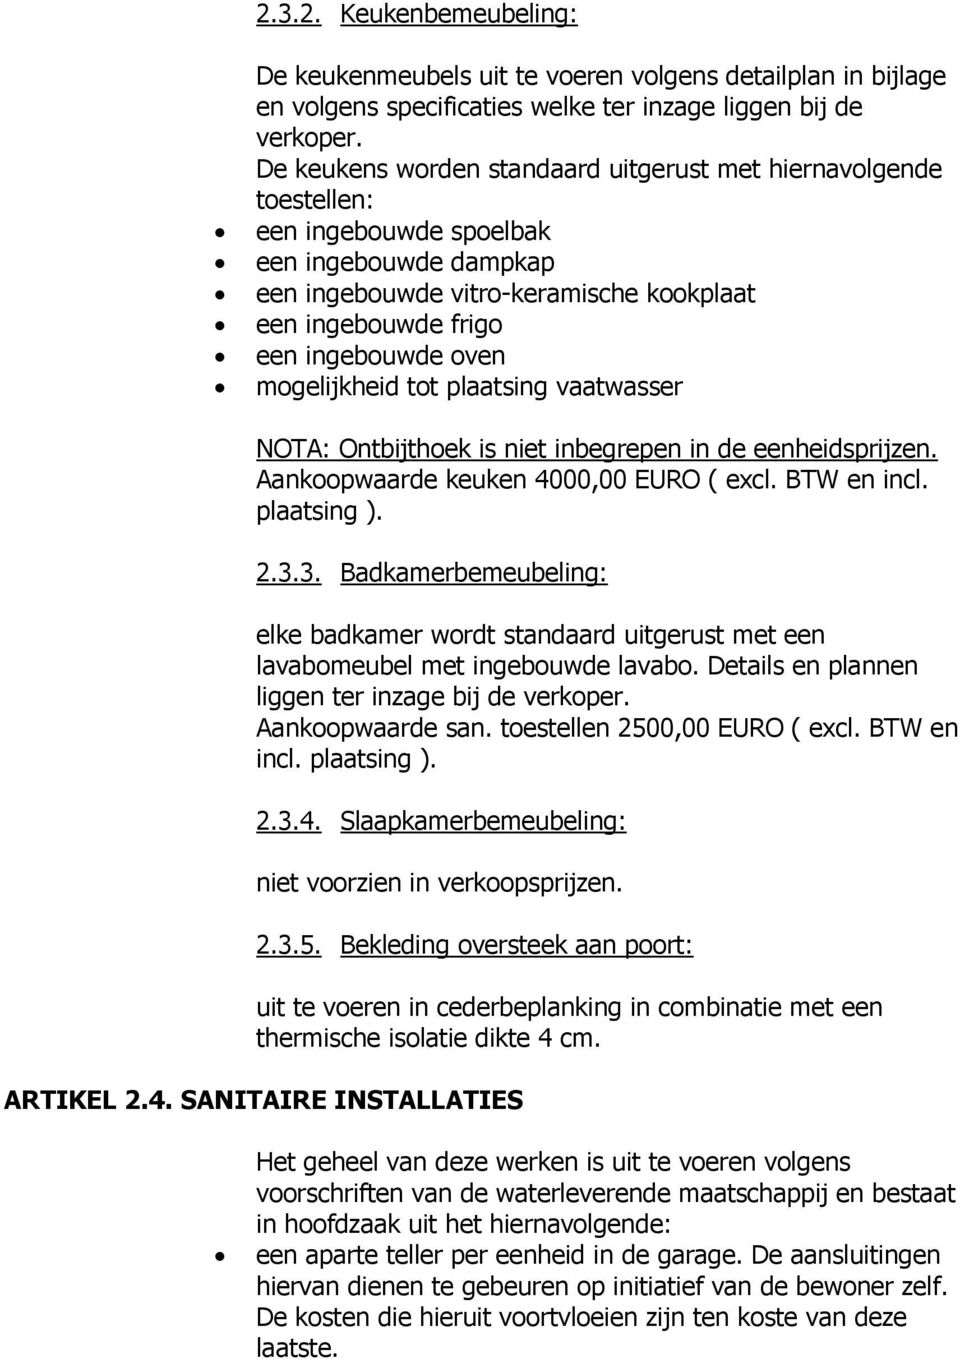 mogelijkheid tot plaatsing vaatwasser NOTA: Ontbijthoek is niet inbegrepen in de eenheidsprijzen. Aankoopwaarde keuken 4000,00 EURO ( excl. BTW en incl. plaatsing ). 2.3.